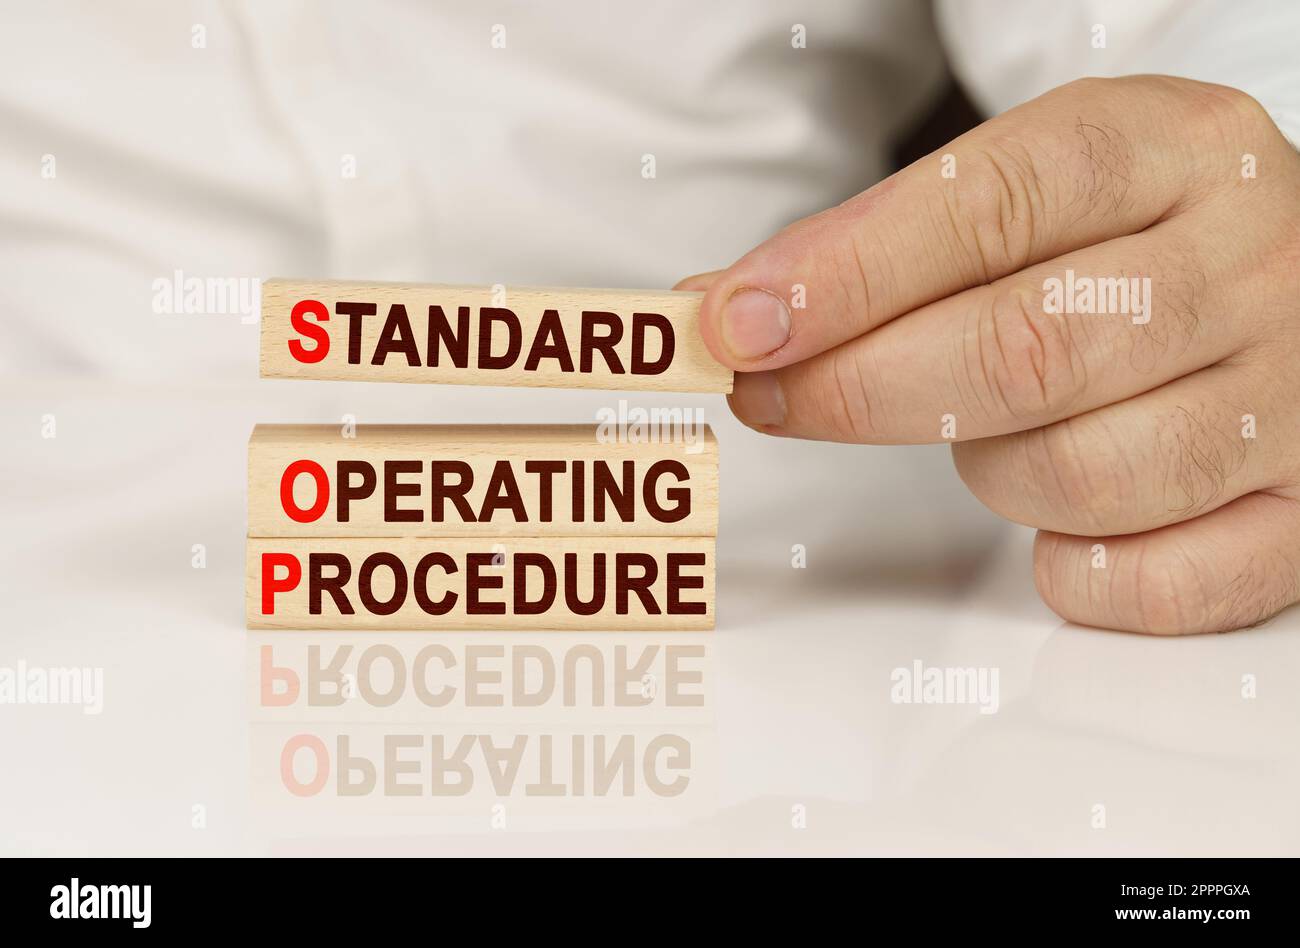 Geschäftskonzept. In den Händen einer Person und auf einer reflektierenden Oberfläche befinden sich Holzblöcke mit der Aufschrift - Standard Operating Procedure Stockfoto